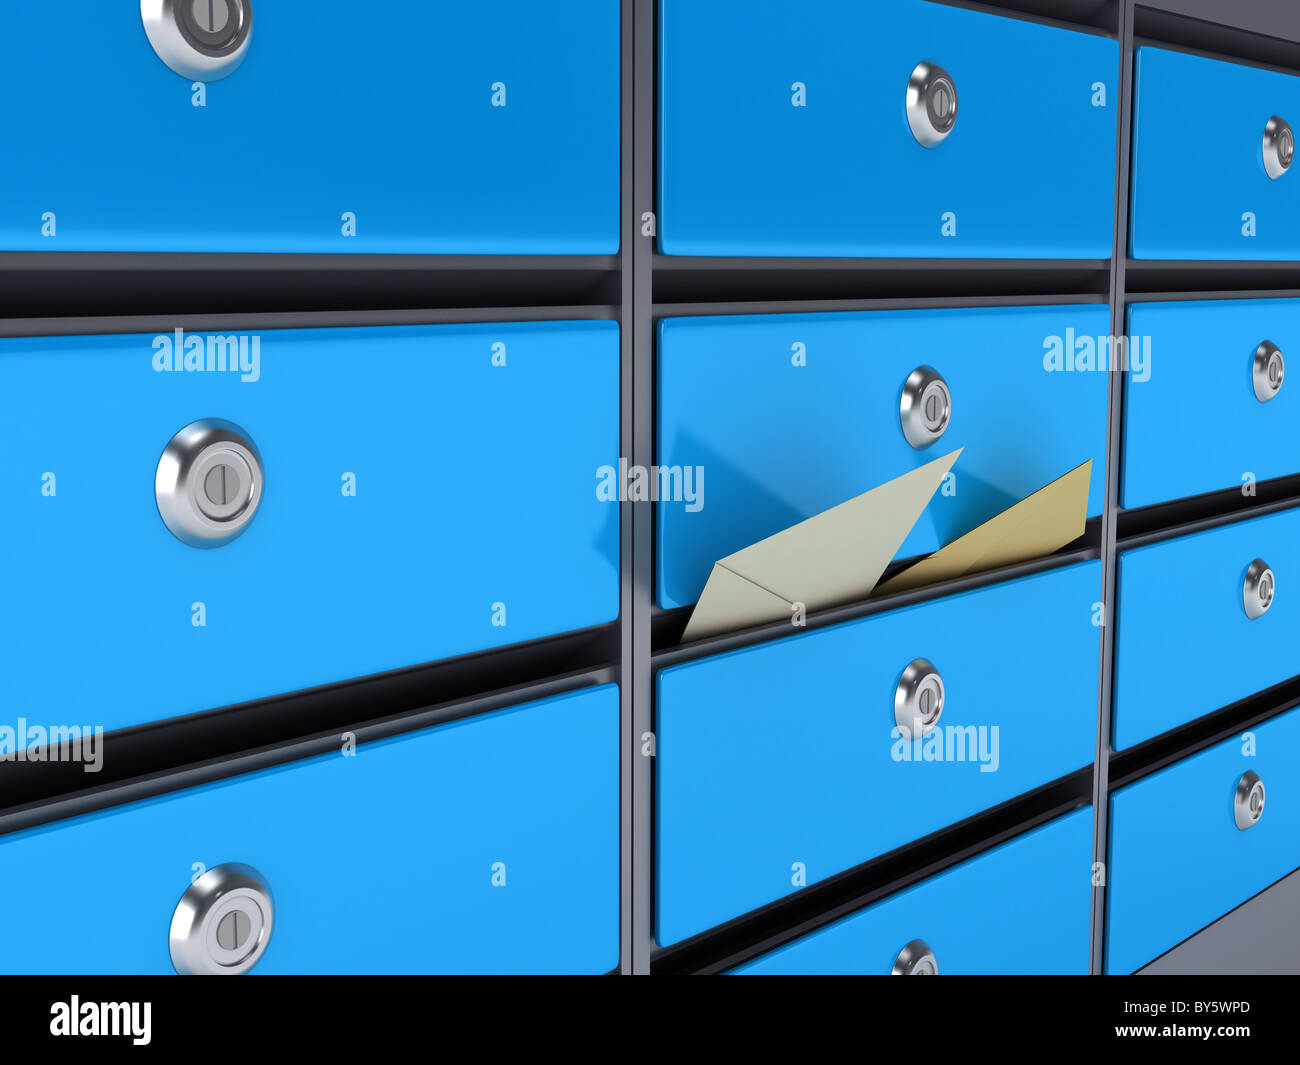 Caselle blu. Immagine 3D rappresentata Foto Stock